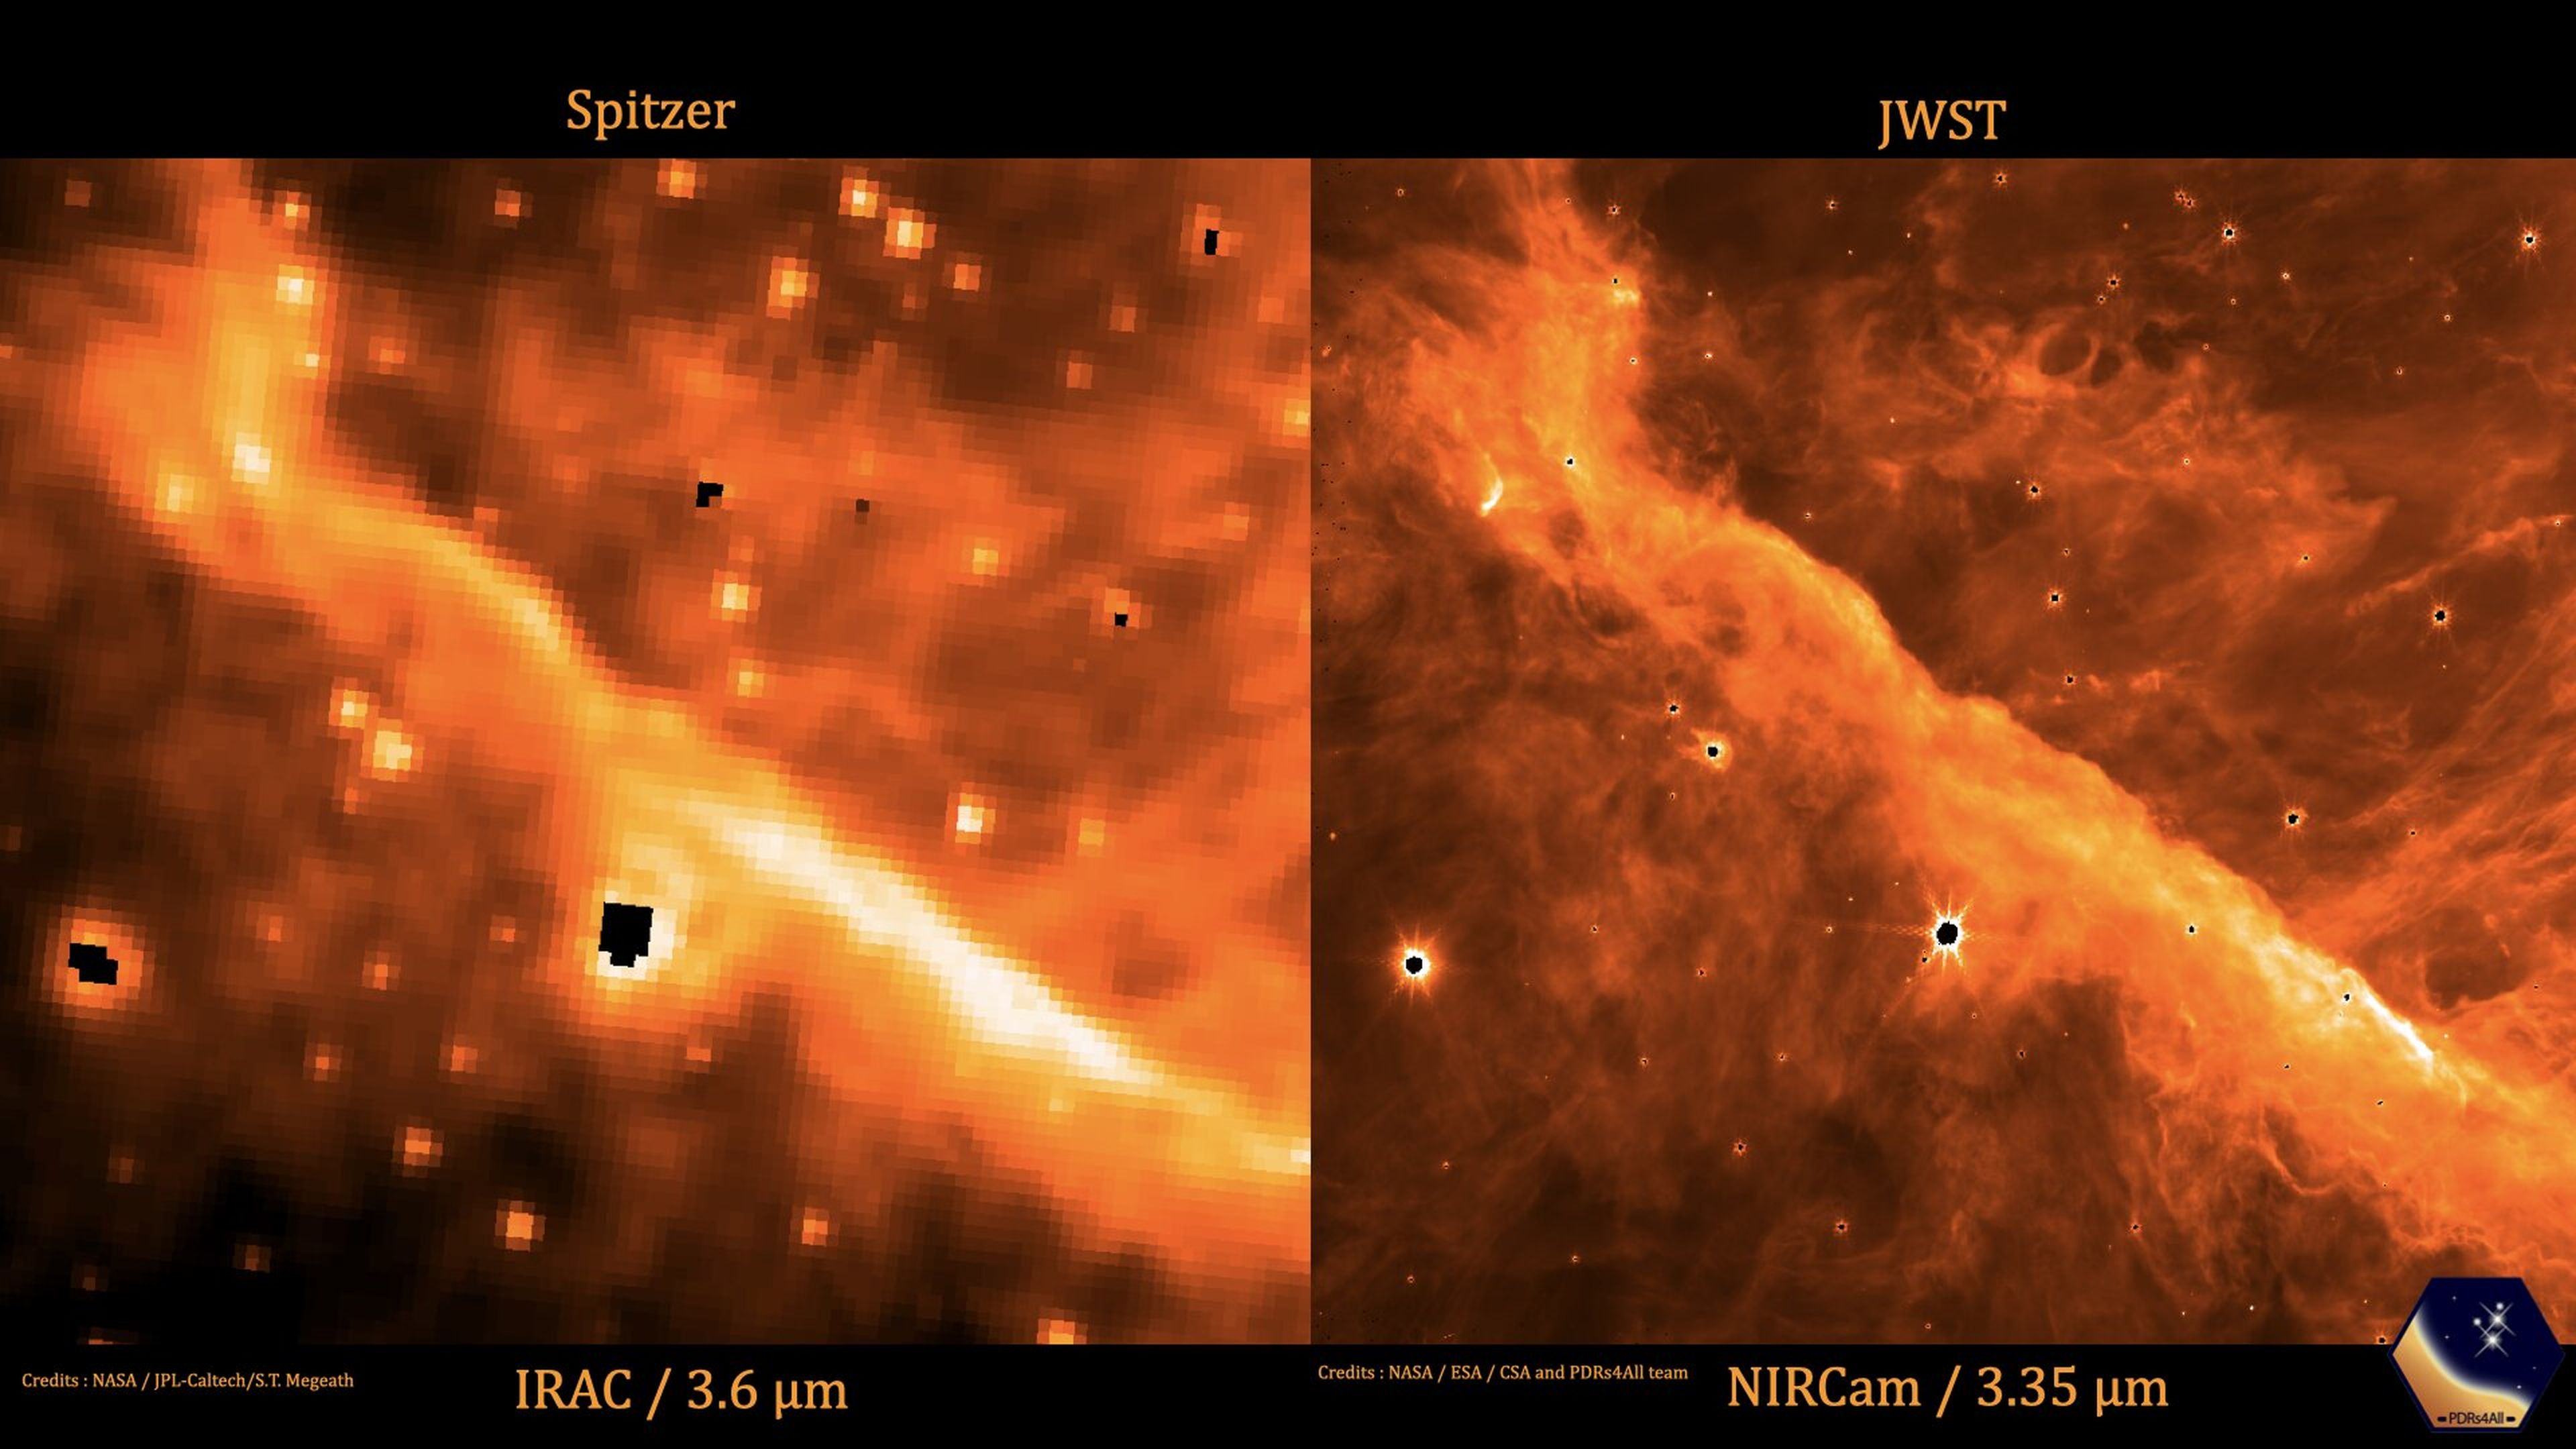 Comparativa de la Nebulosa de Orión entre el Spitzer (izquierda) y el JWST (derecha).